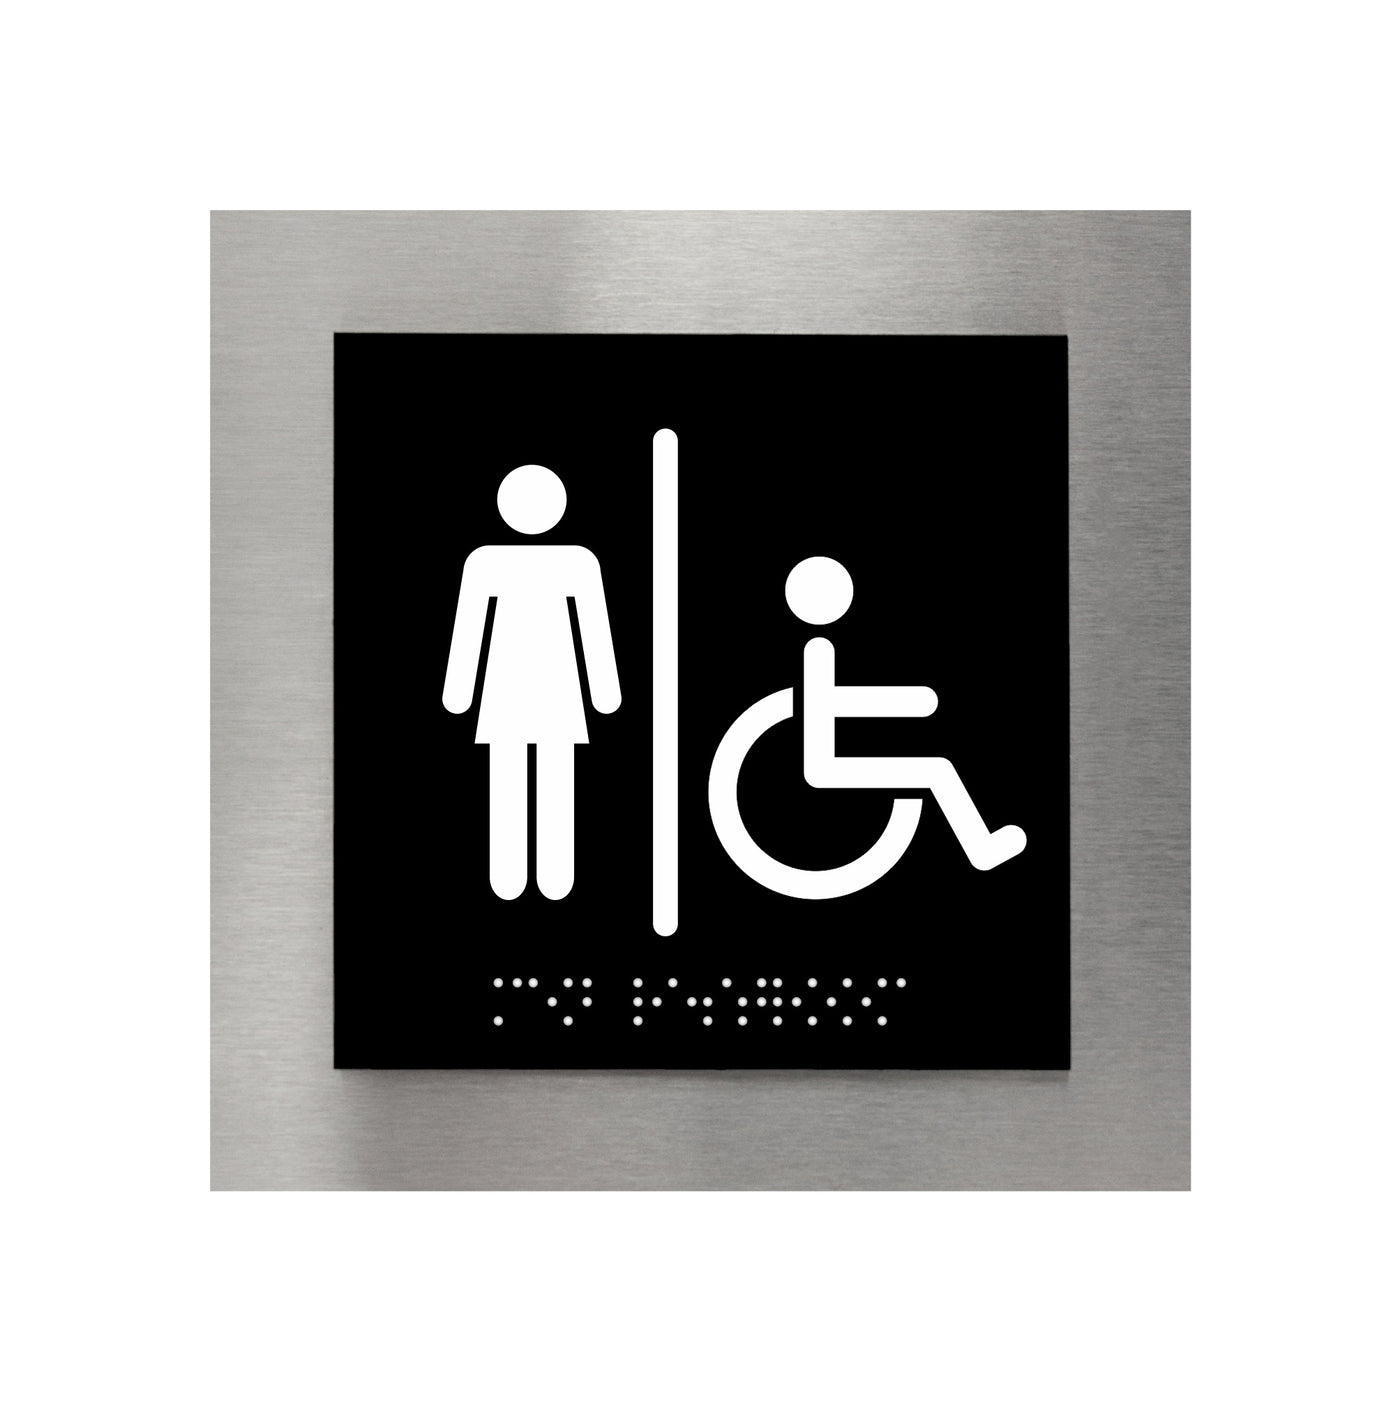 Women & Wheelchair Restroom Sign - "Modern" Design